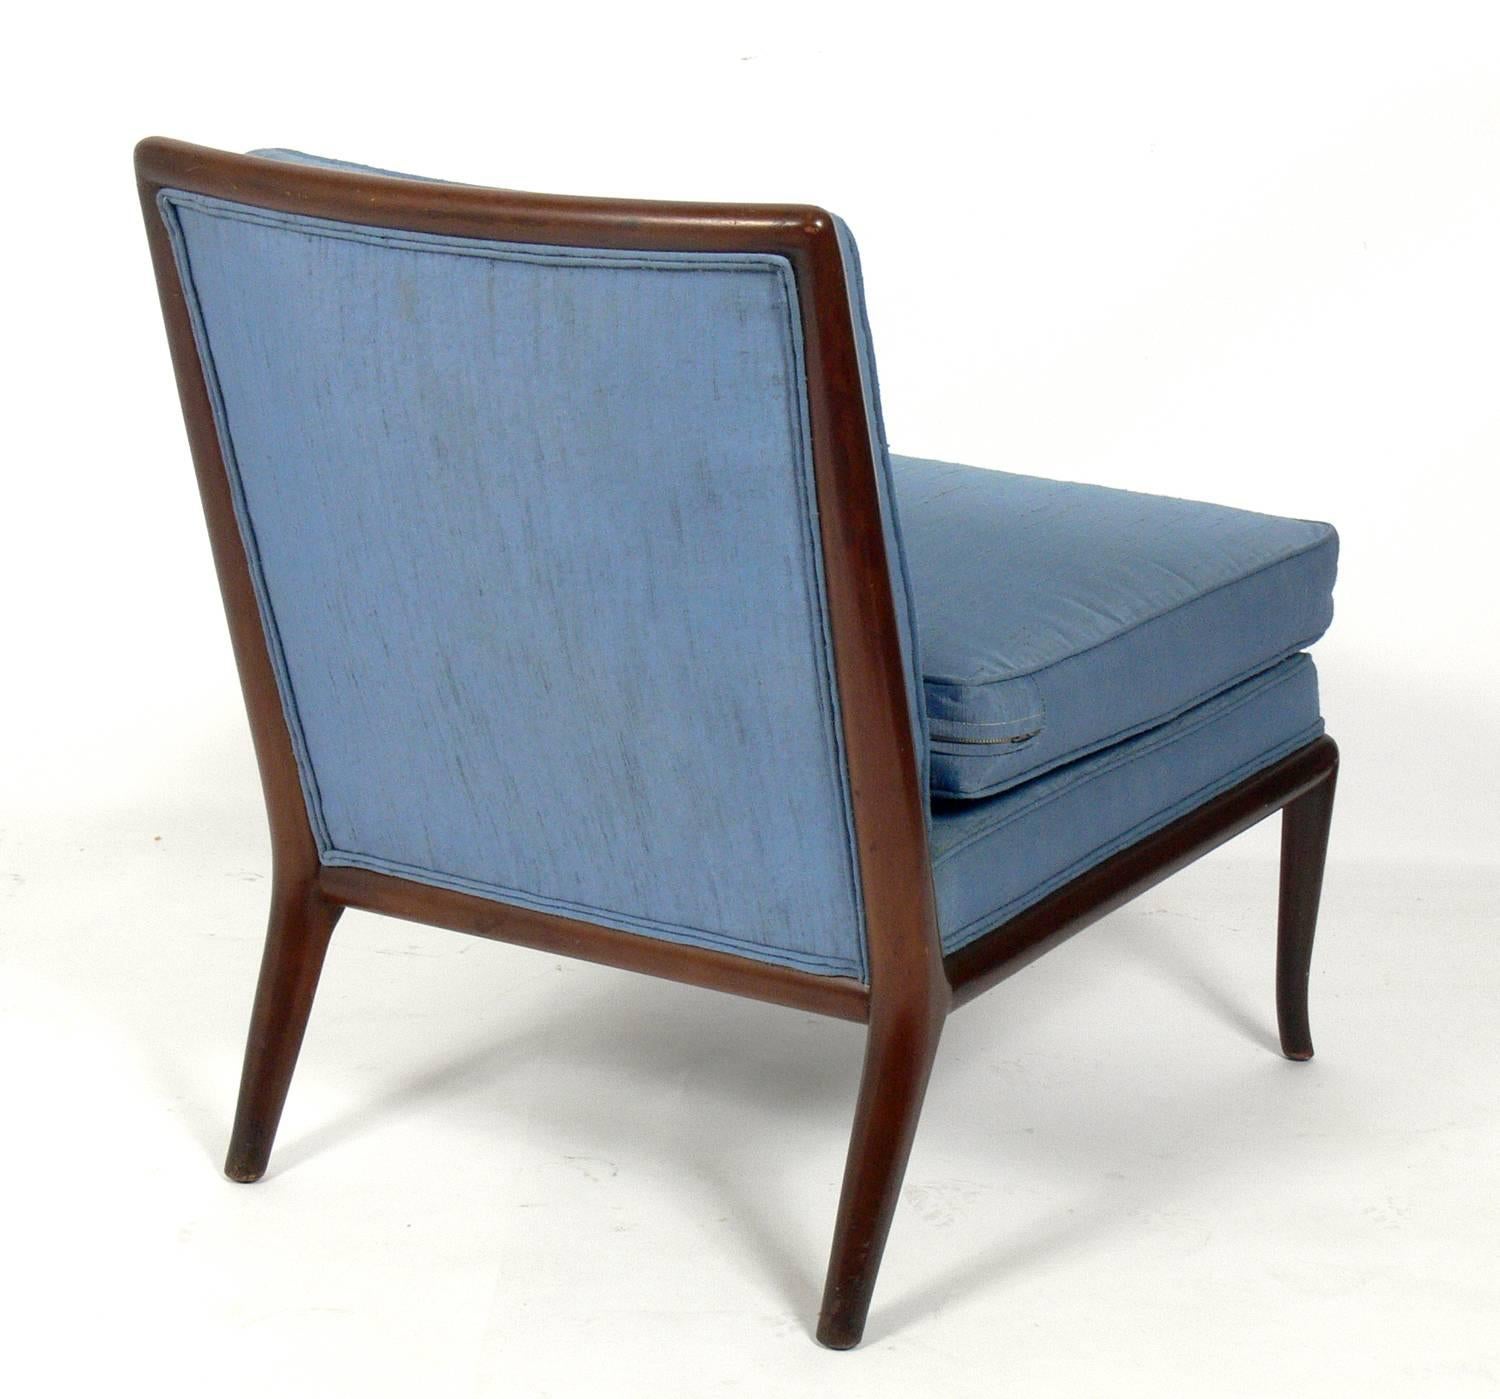 American Modernist Slipper Chair Designed by T.H. Robsjohn-Gibbings